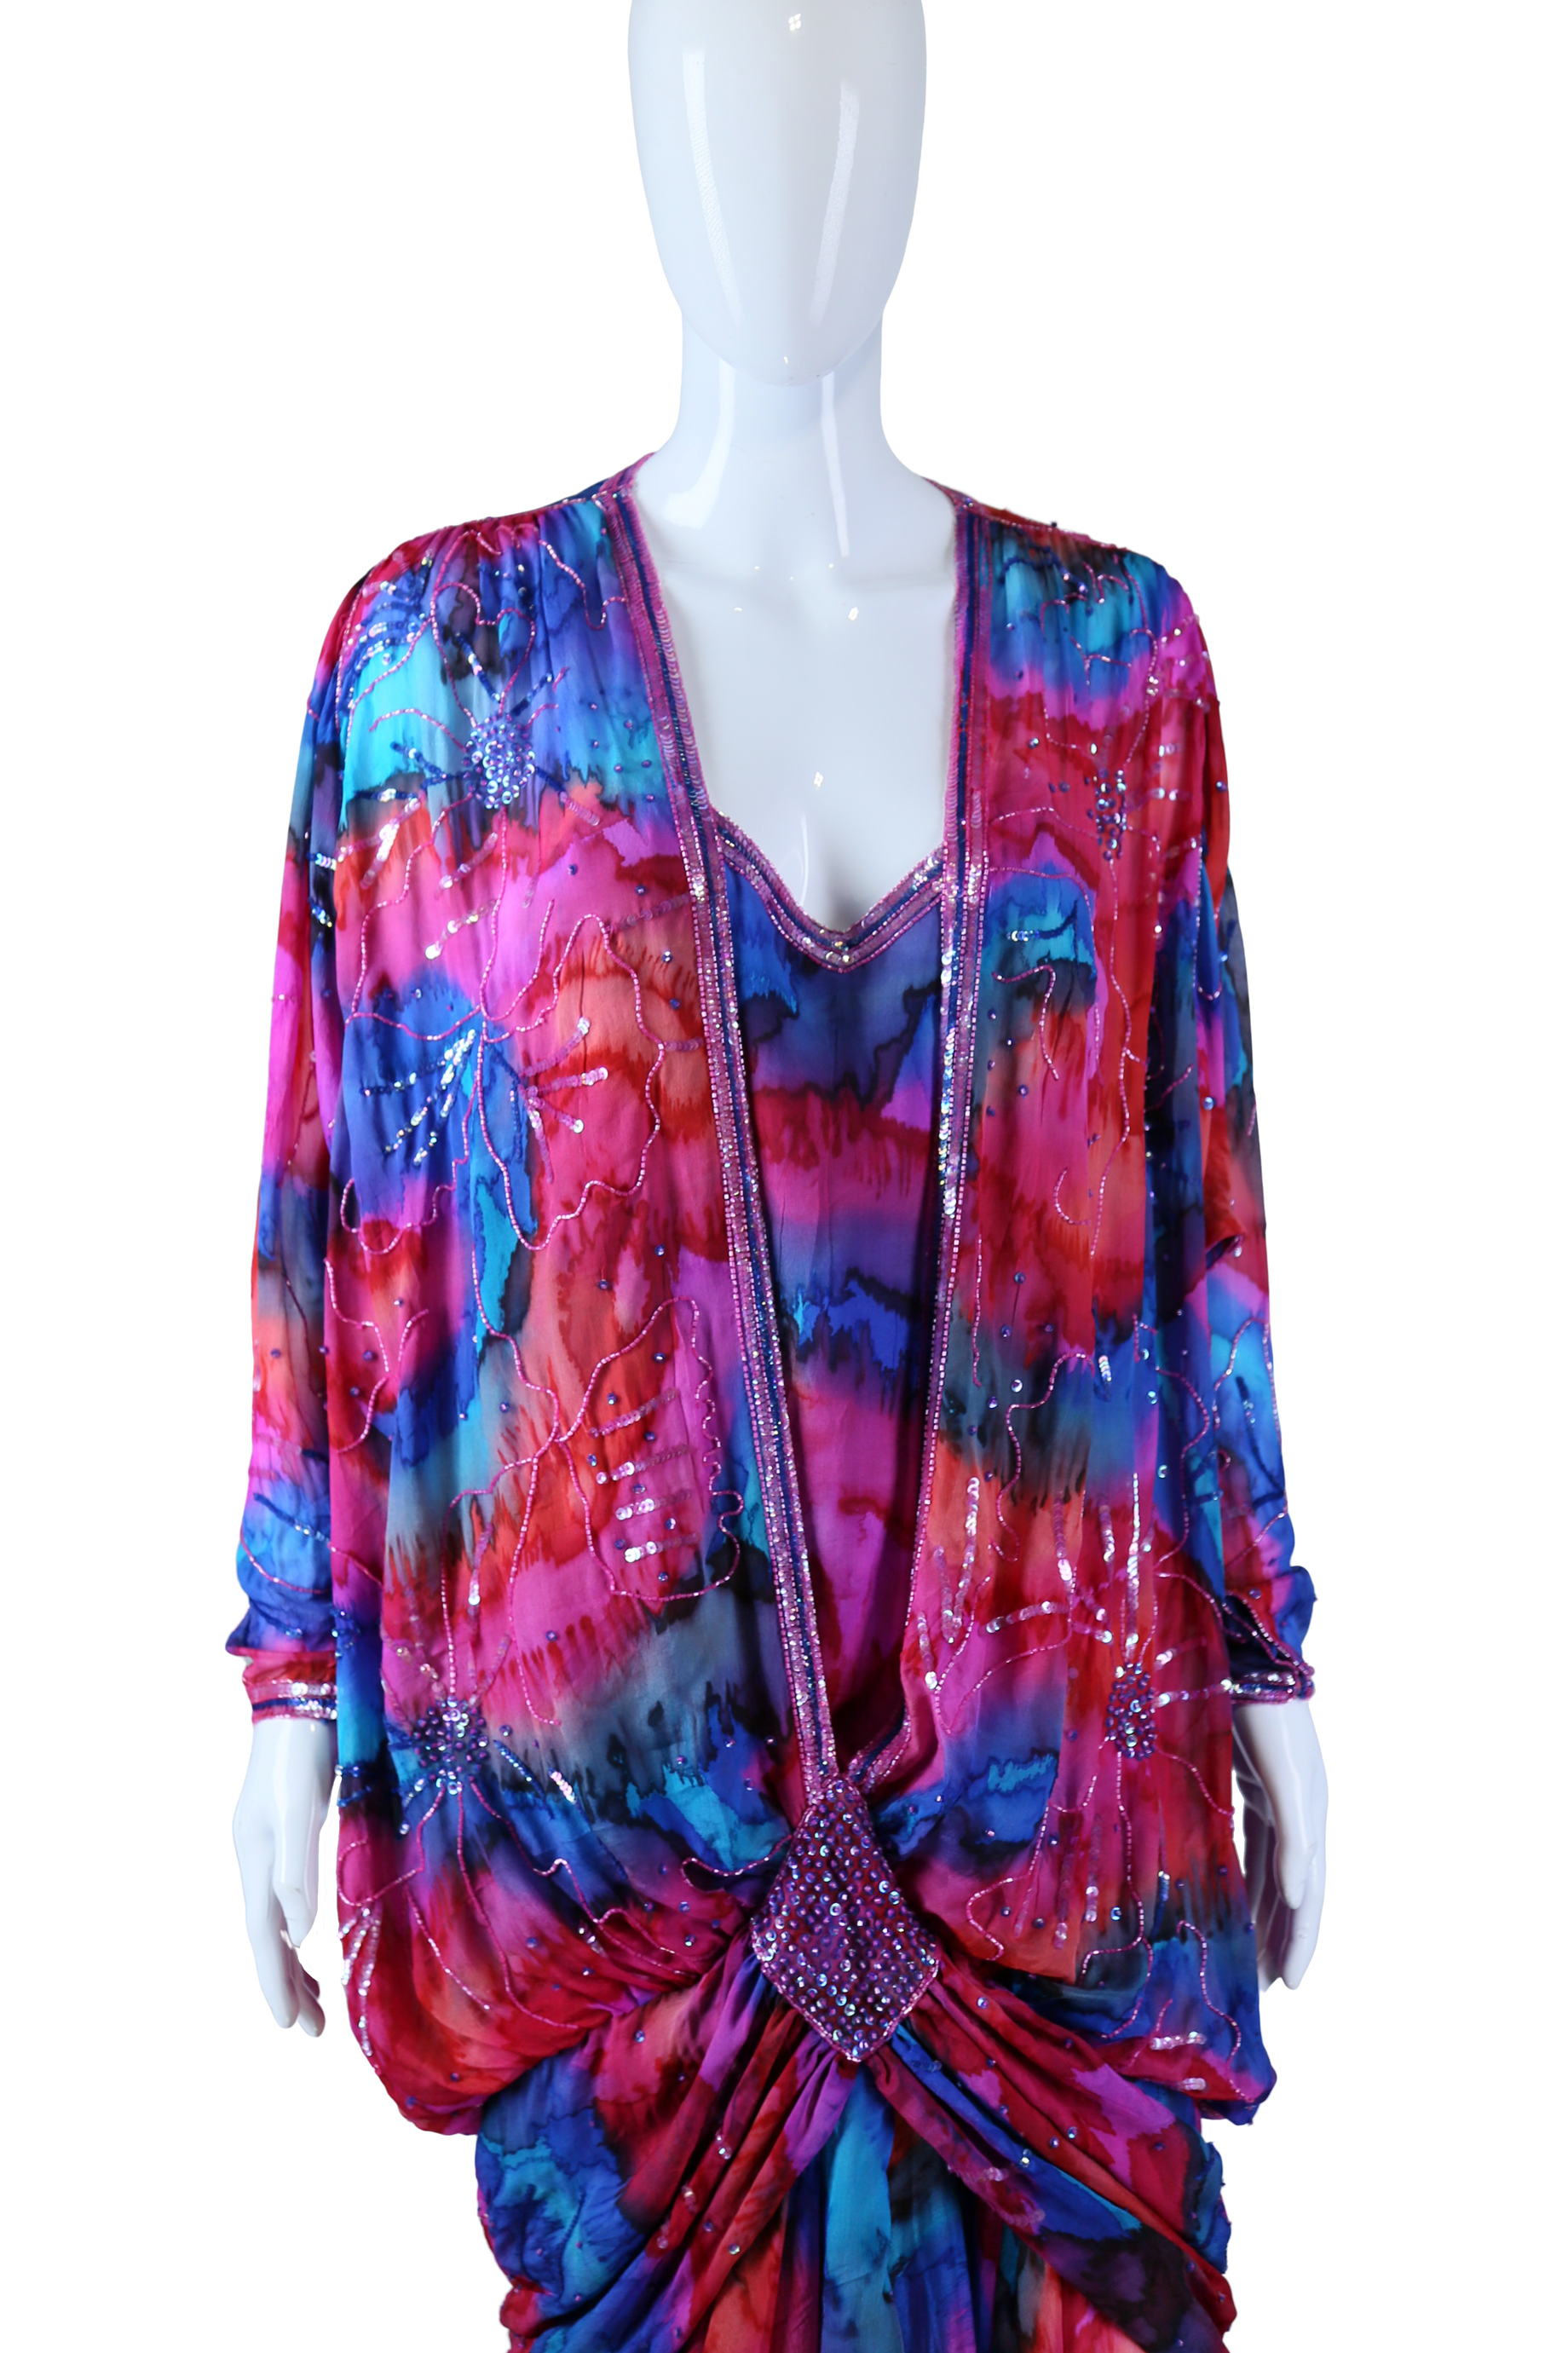 Judith Ann Rainbow Silk Beaded Gown - Embers / Cinders Vintage